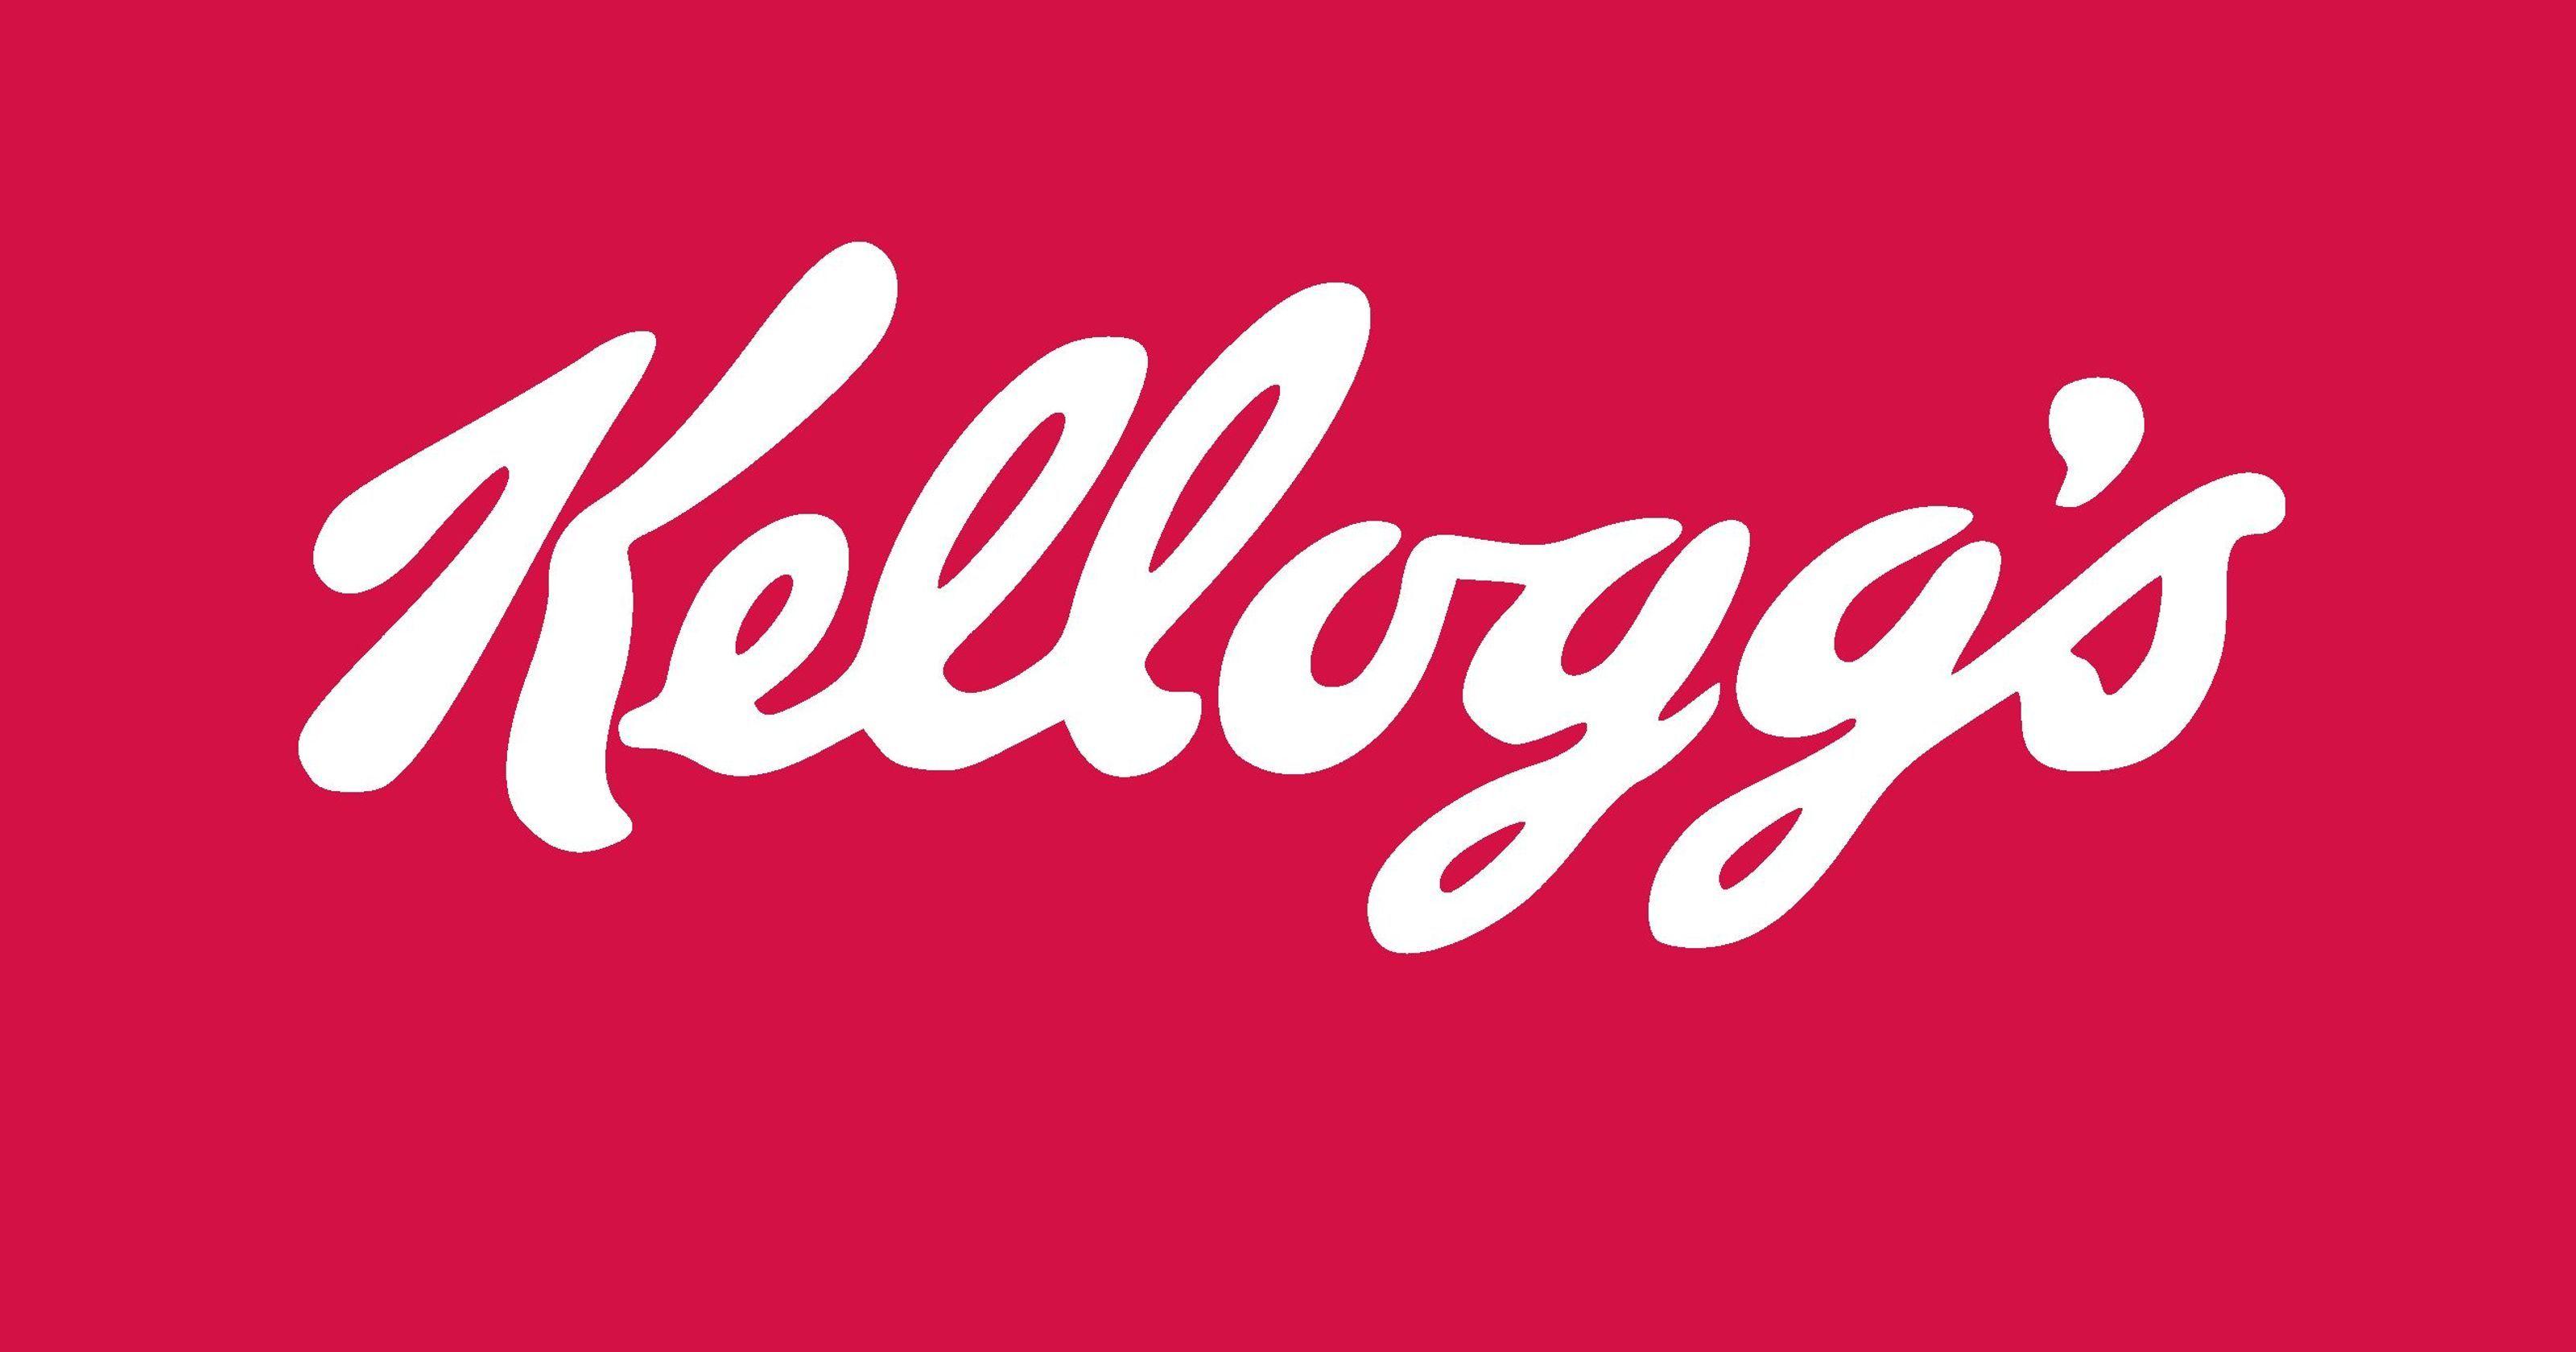 Kelogs Logo - Woman sues Kellogg after developing sepsis